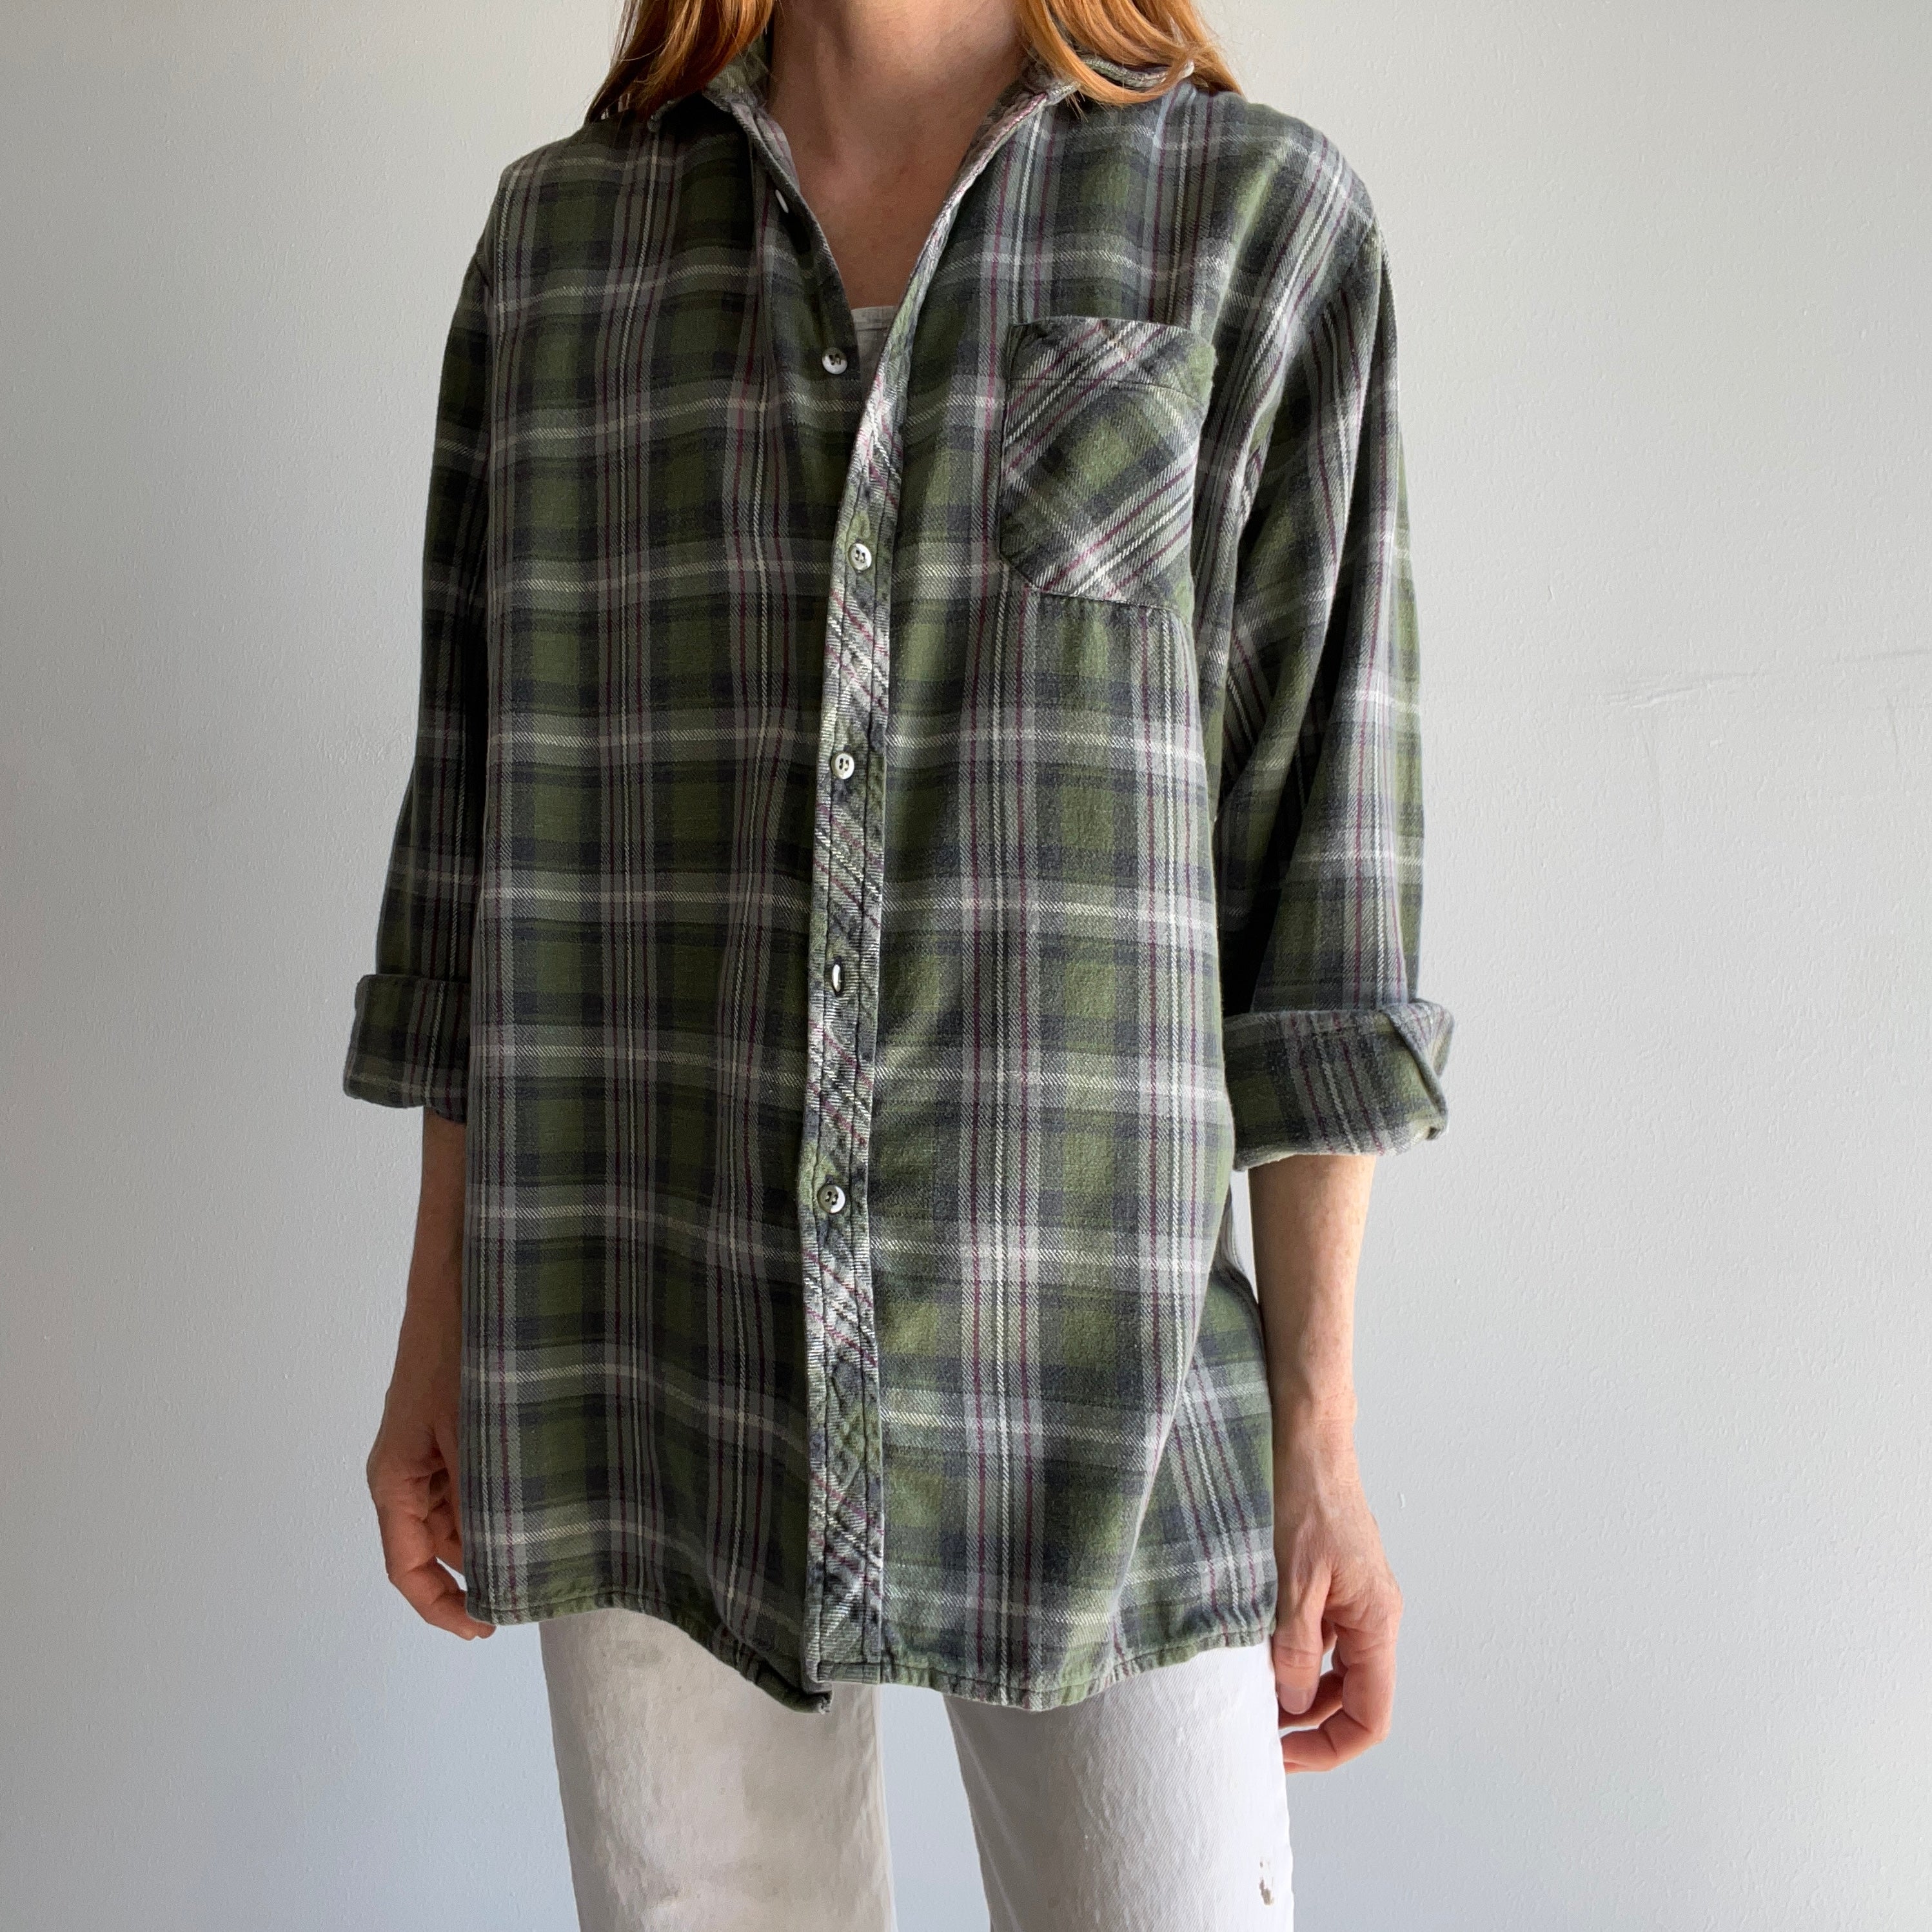 Online Vintage Store, 90's Men Plaid Flannel Shirt